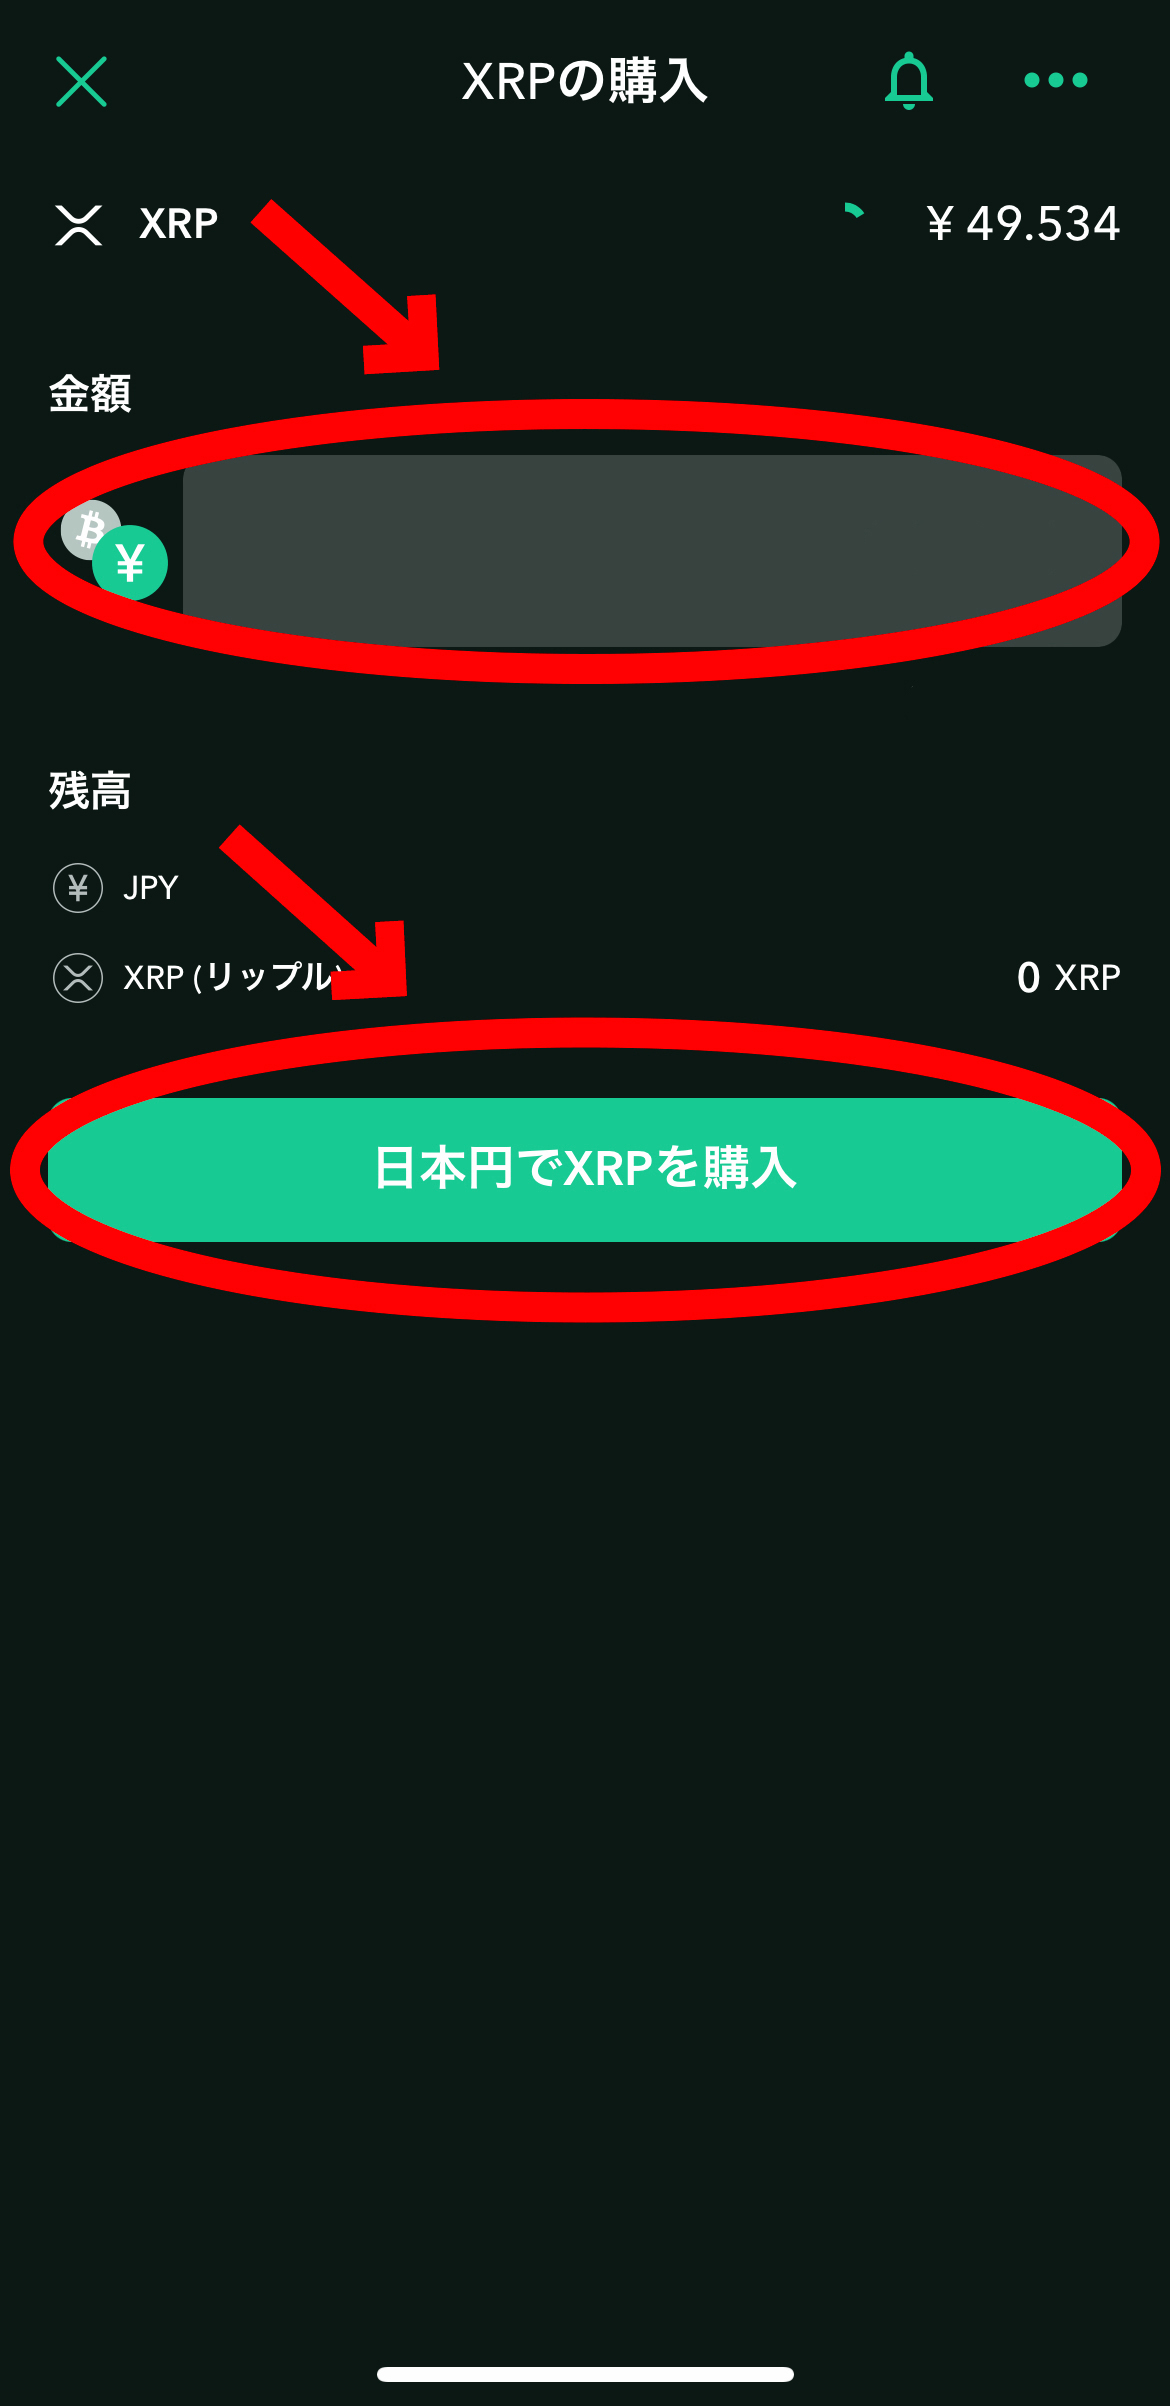 BYBITでUSDTのステーキング方法【バイビット】【スマホで簡単】【初心者向け】日本円でXRPを購入を選択します